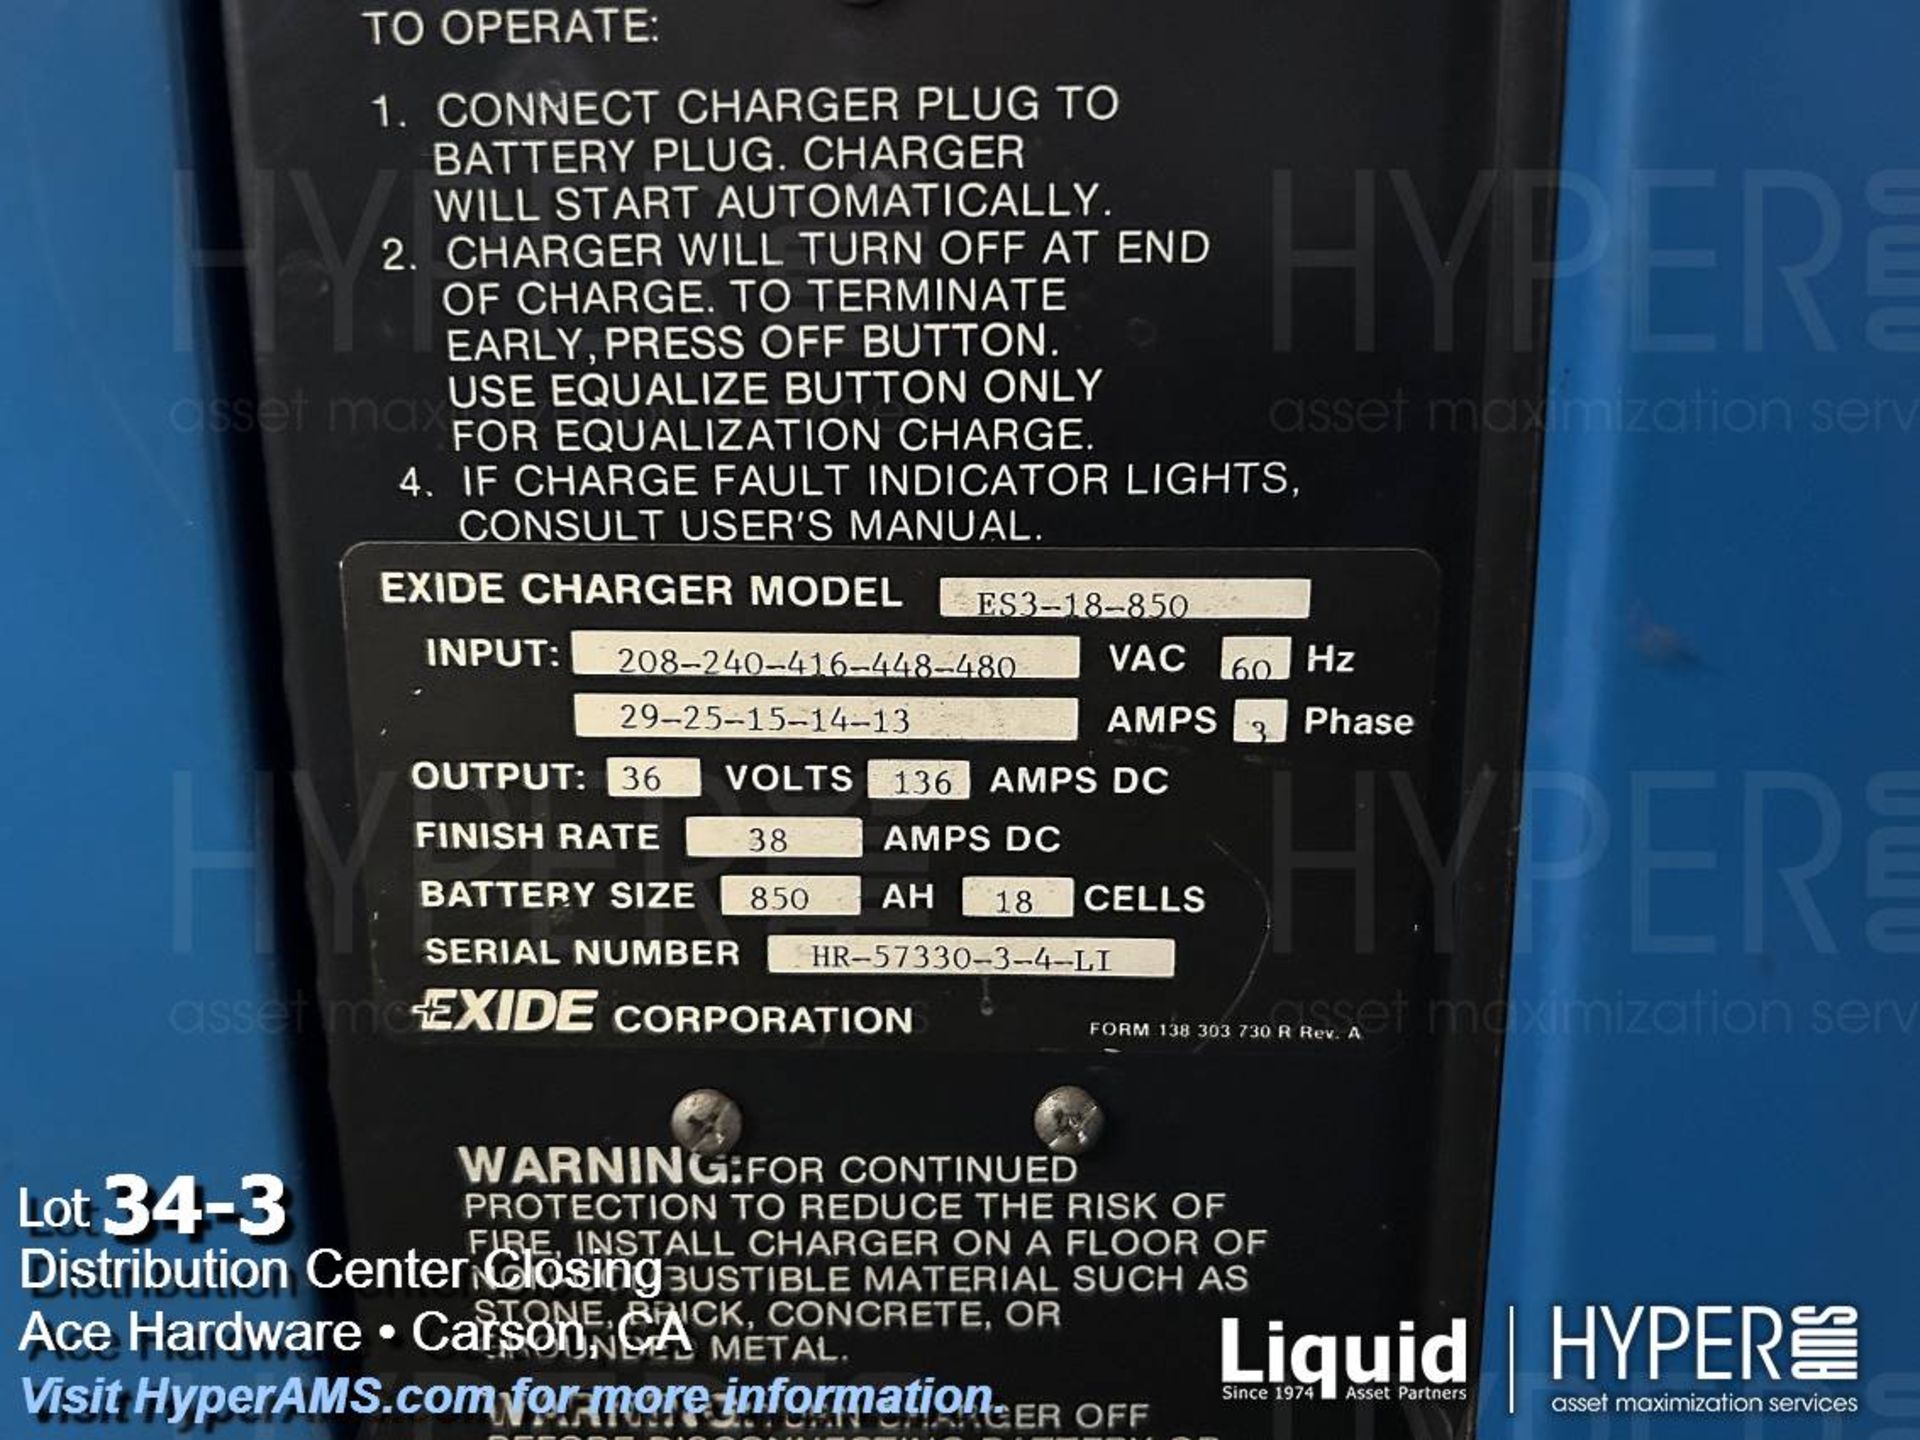 Exide System 3000 36v battery charger - Image 3 of 9